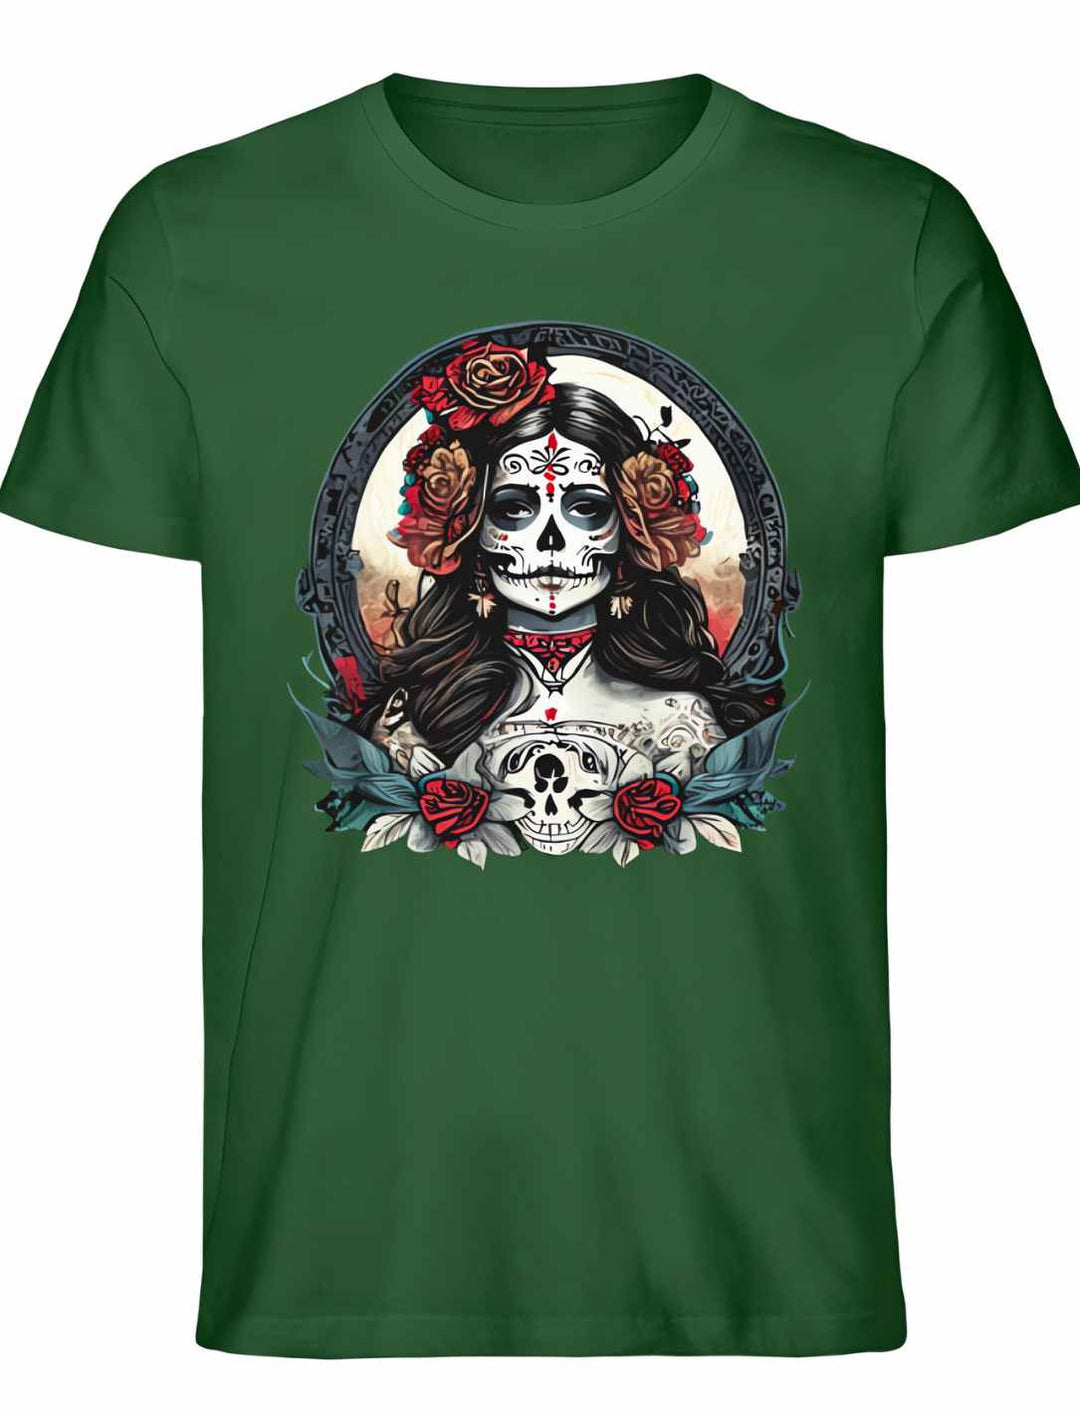 Unisex La Catrina Shirt, Ikone des Día de los Muertos, aus Bio-Baumwolle in tiefem Bottle Green – Runental.de